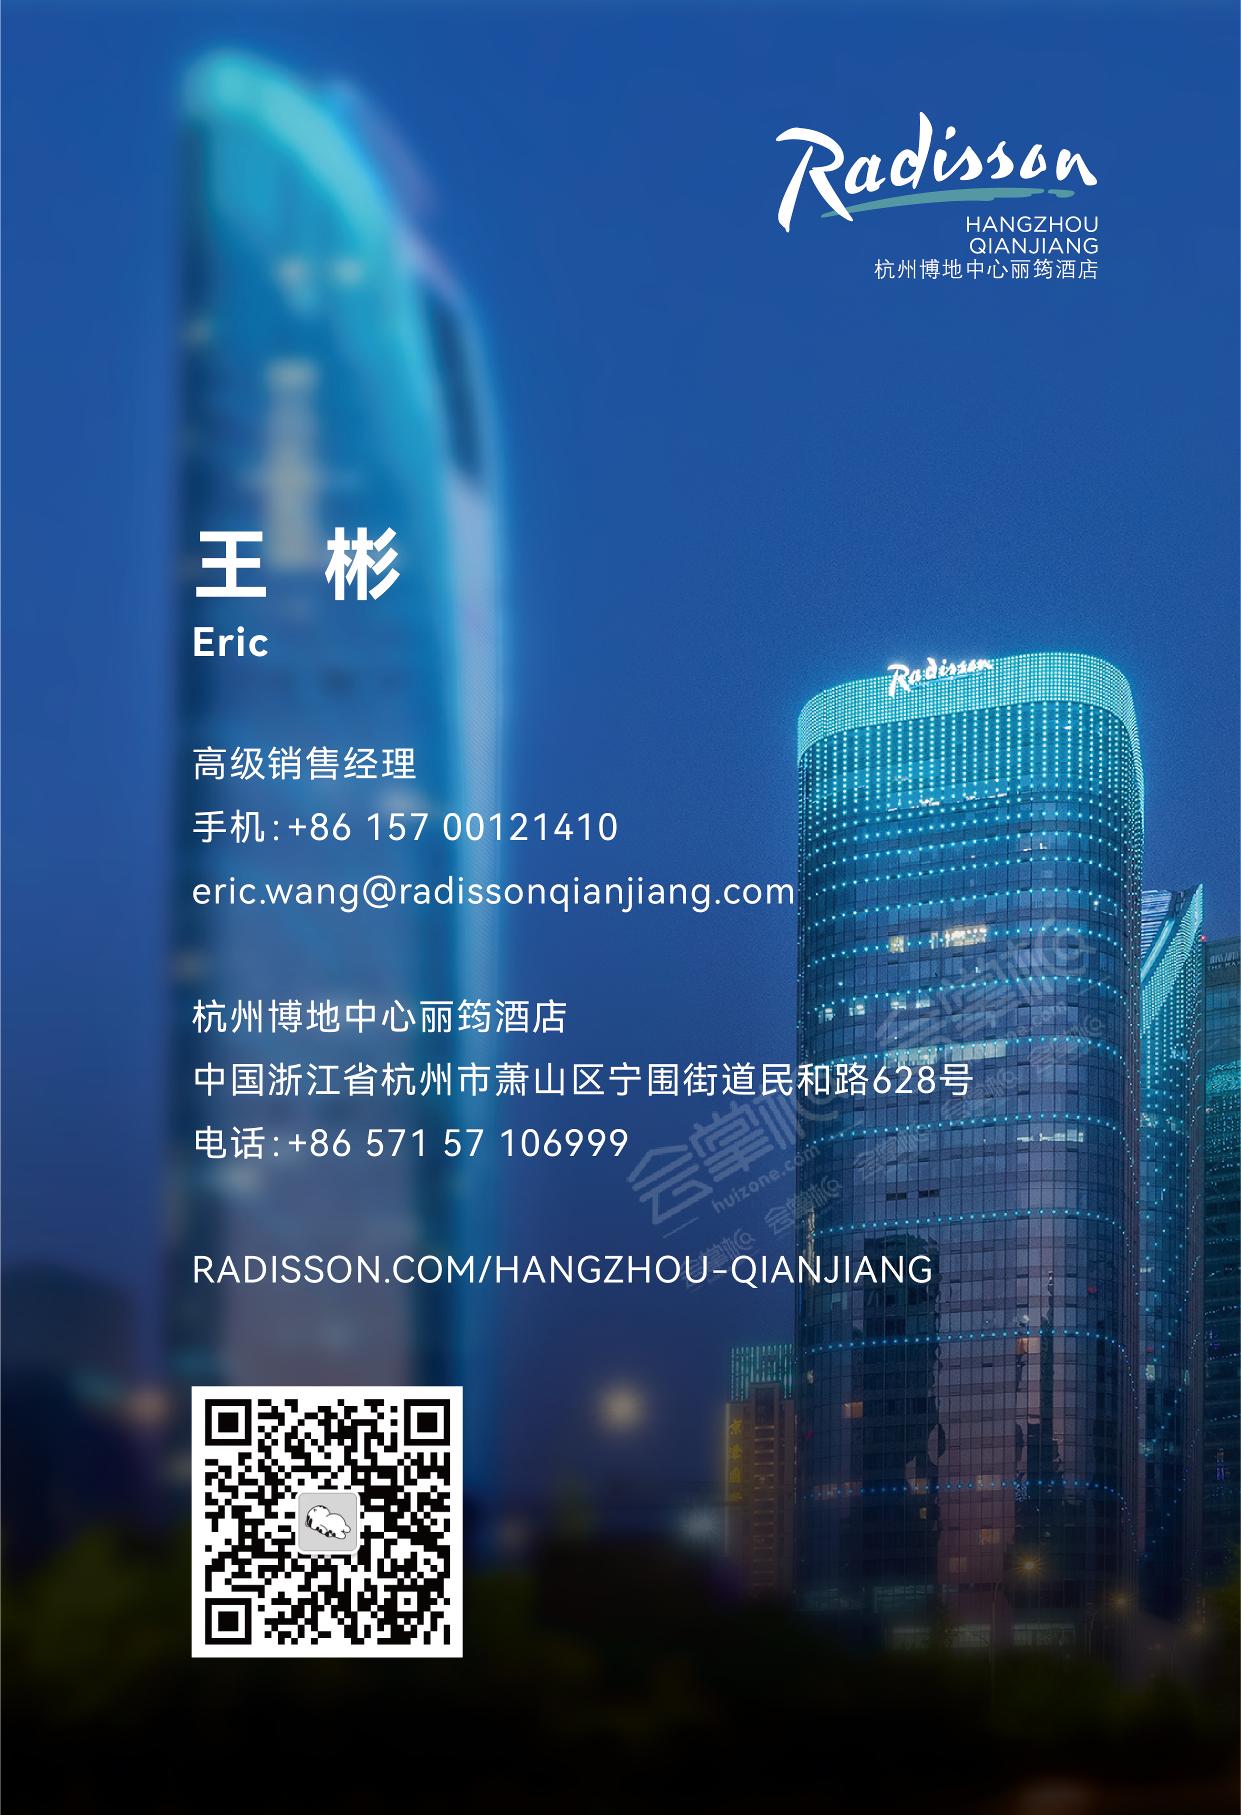 杭州五星级酒店最大容纳400人的会议场地|杭州博地中心丽筠酒店的价格与联系方式